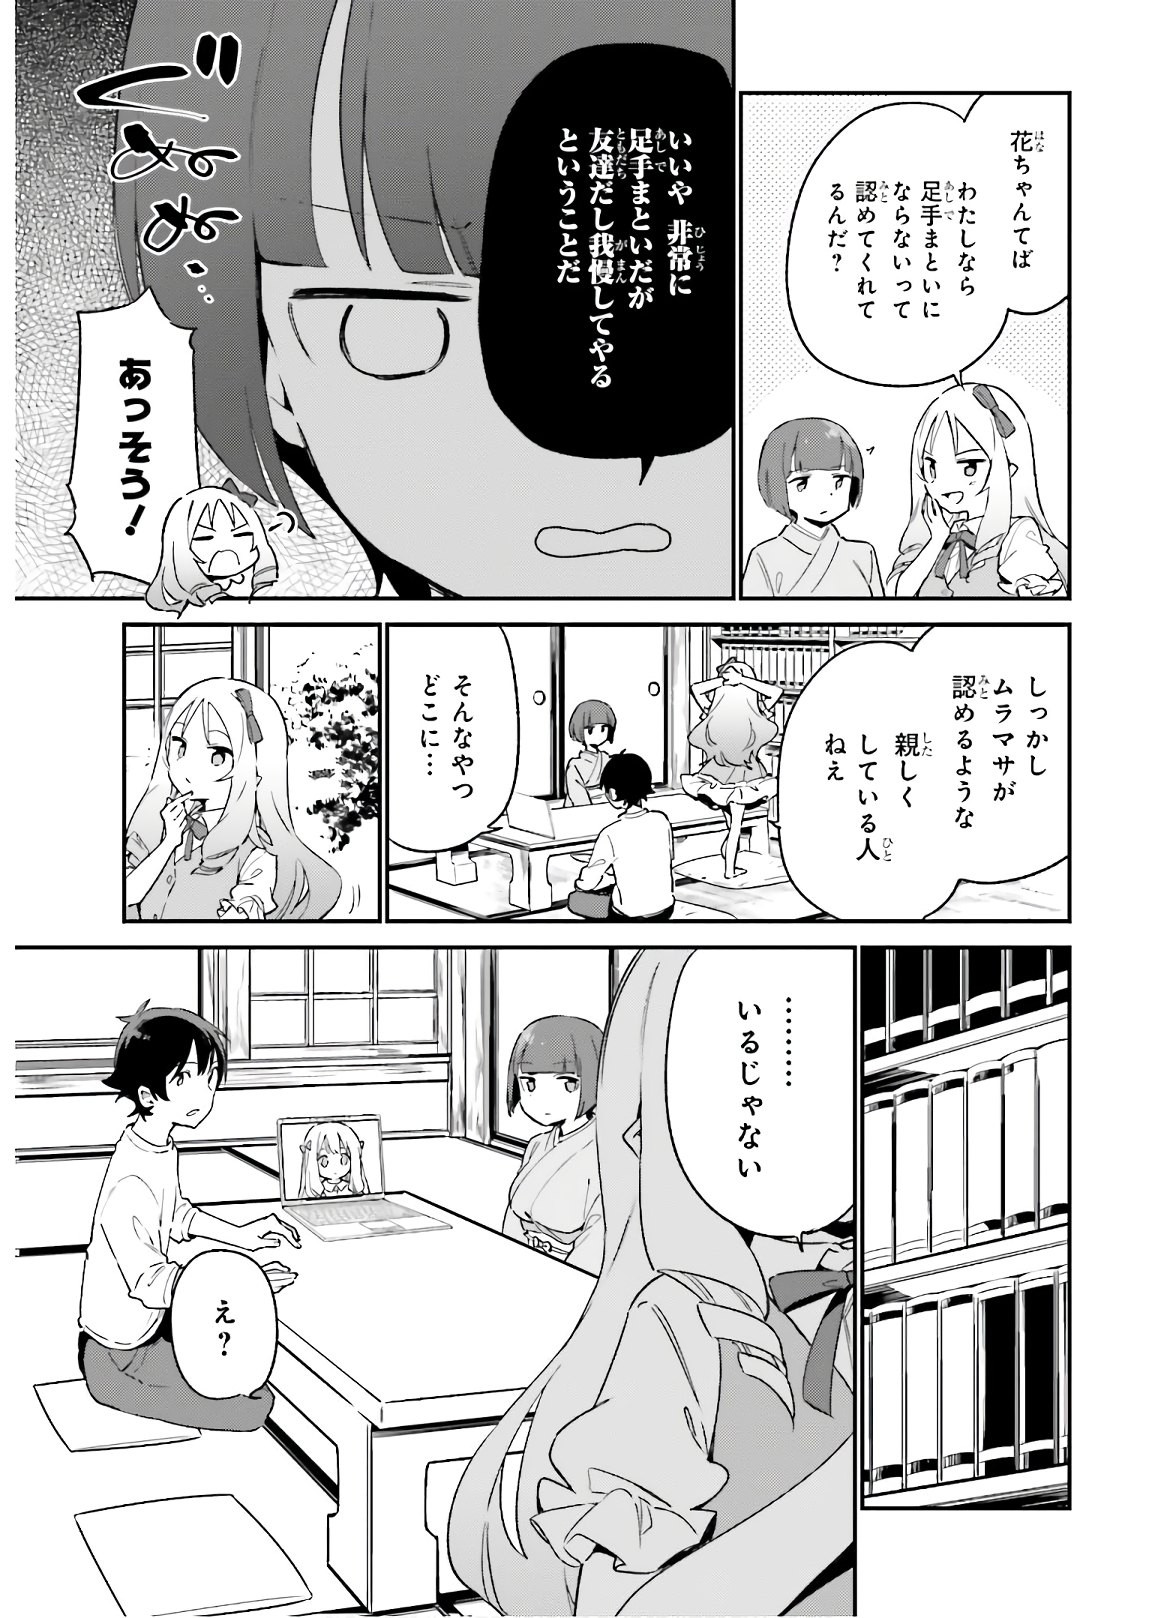 Ero Manga Sensei - Chapter 70 - Page 3